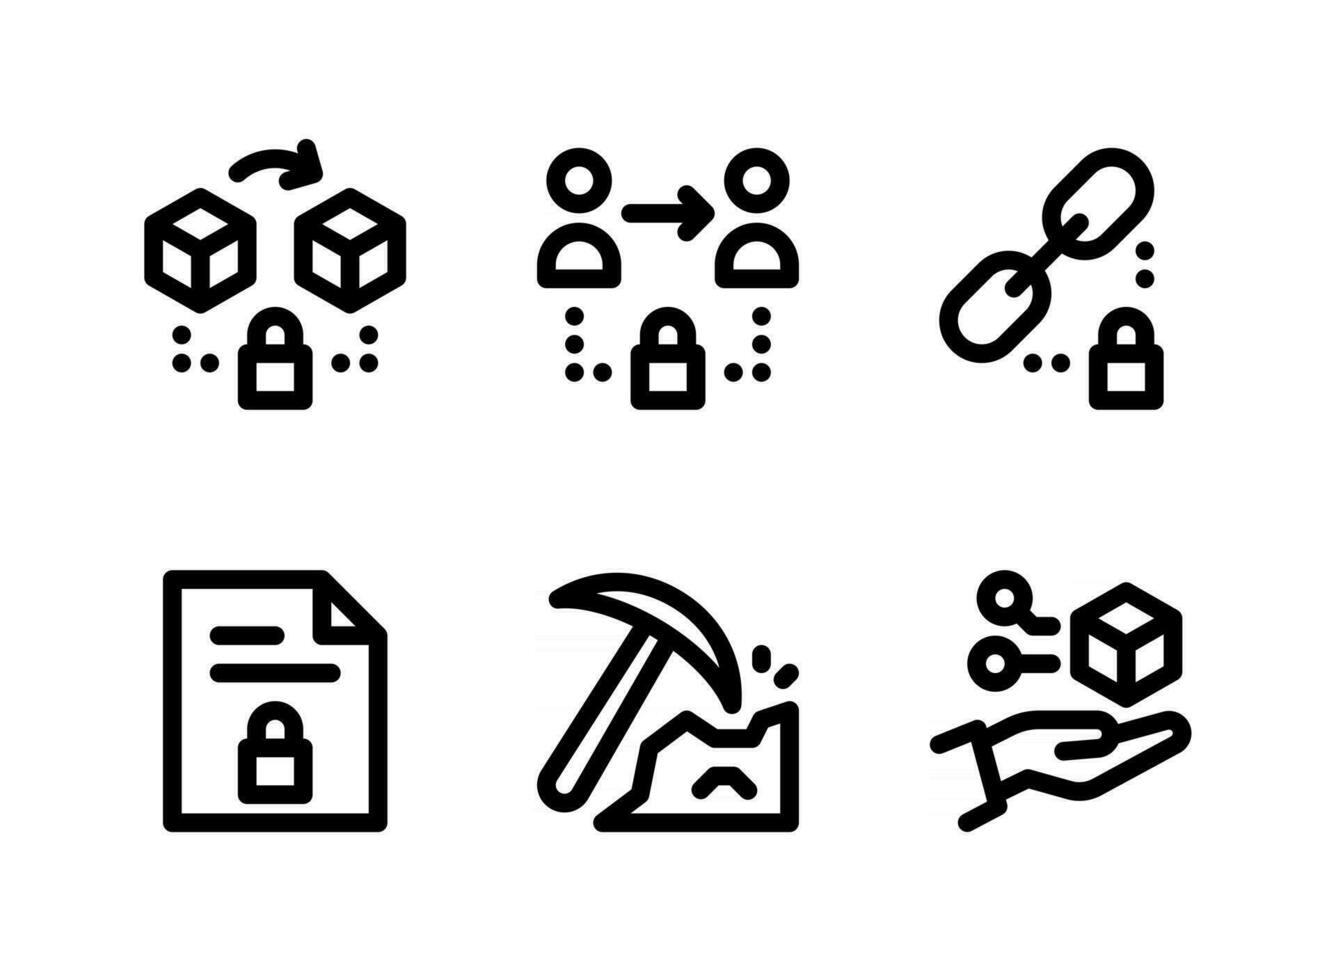 semplice set di icone di linee vettoriali relative alla criptovaluta